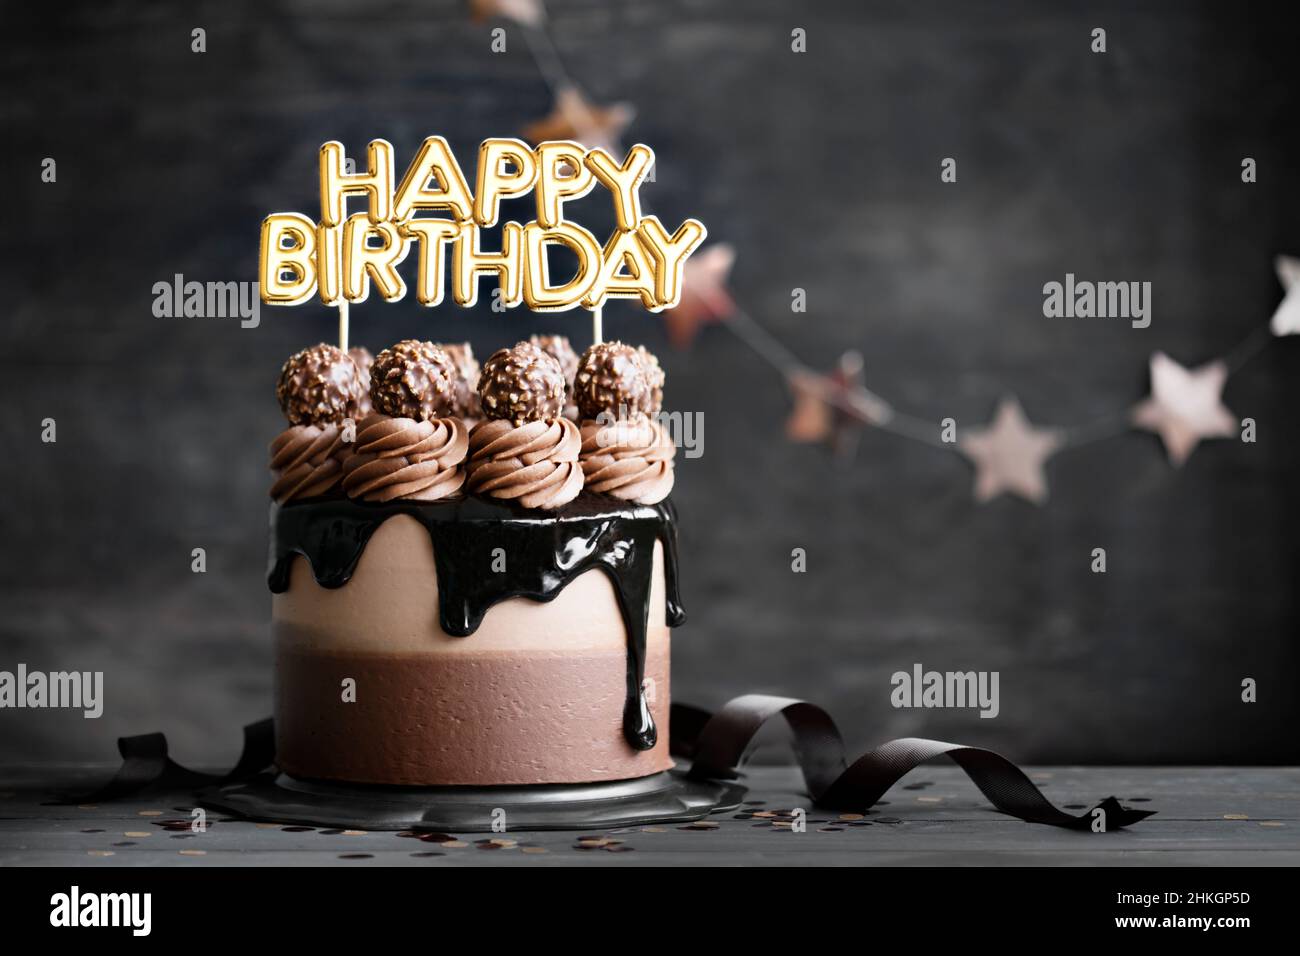 Chocolate birthday cake with  chocolate ganache drip icing and happy birthday banner Stock Photo